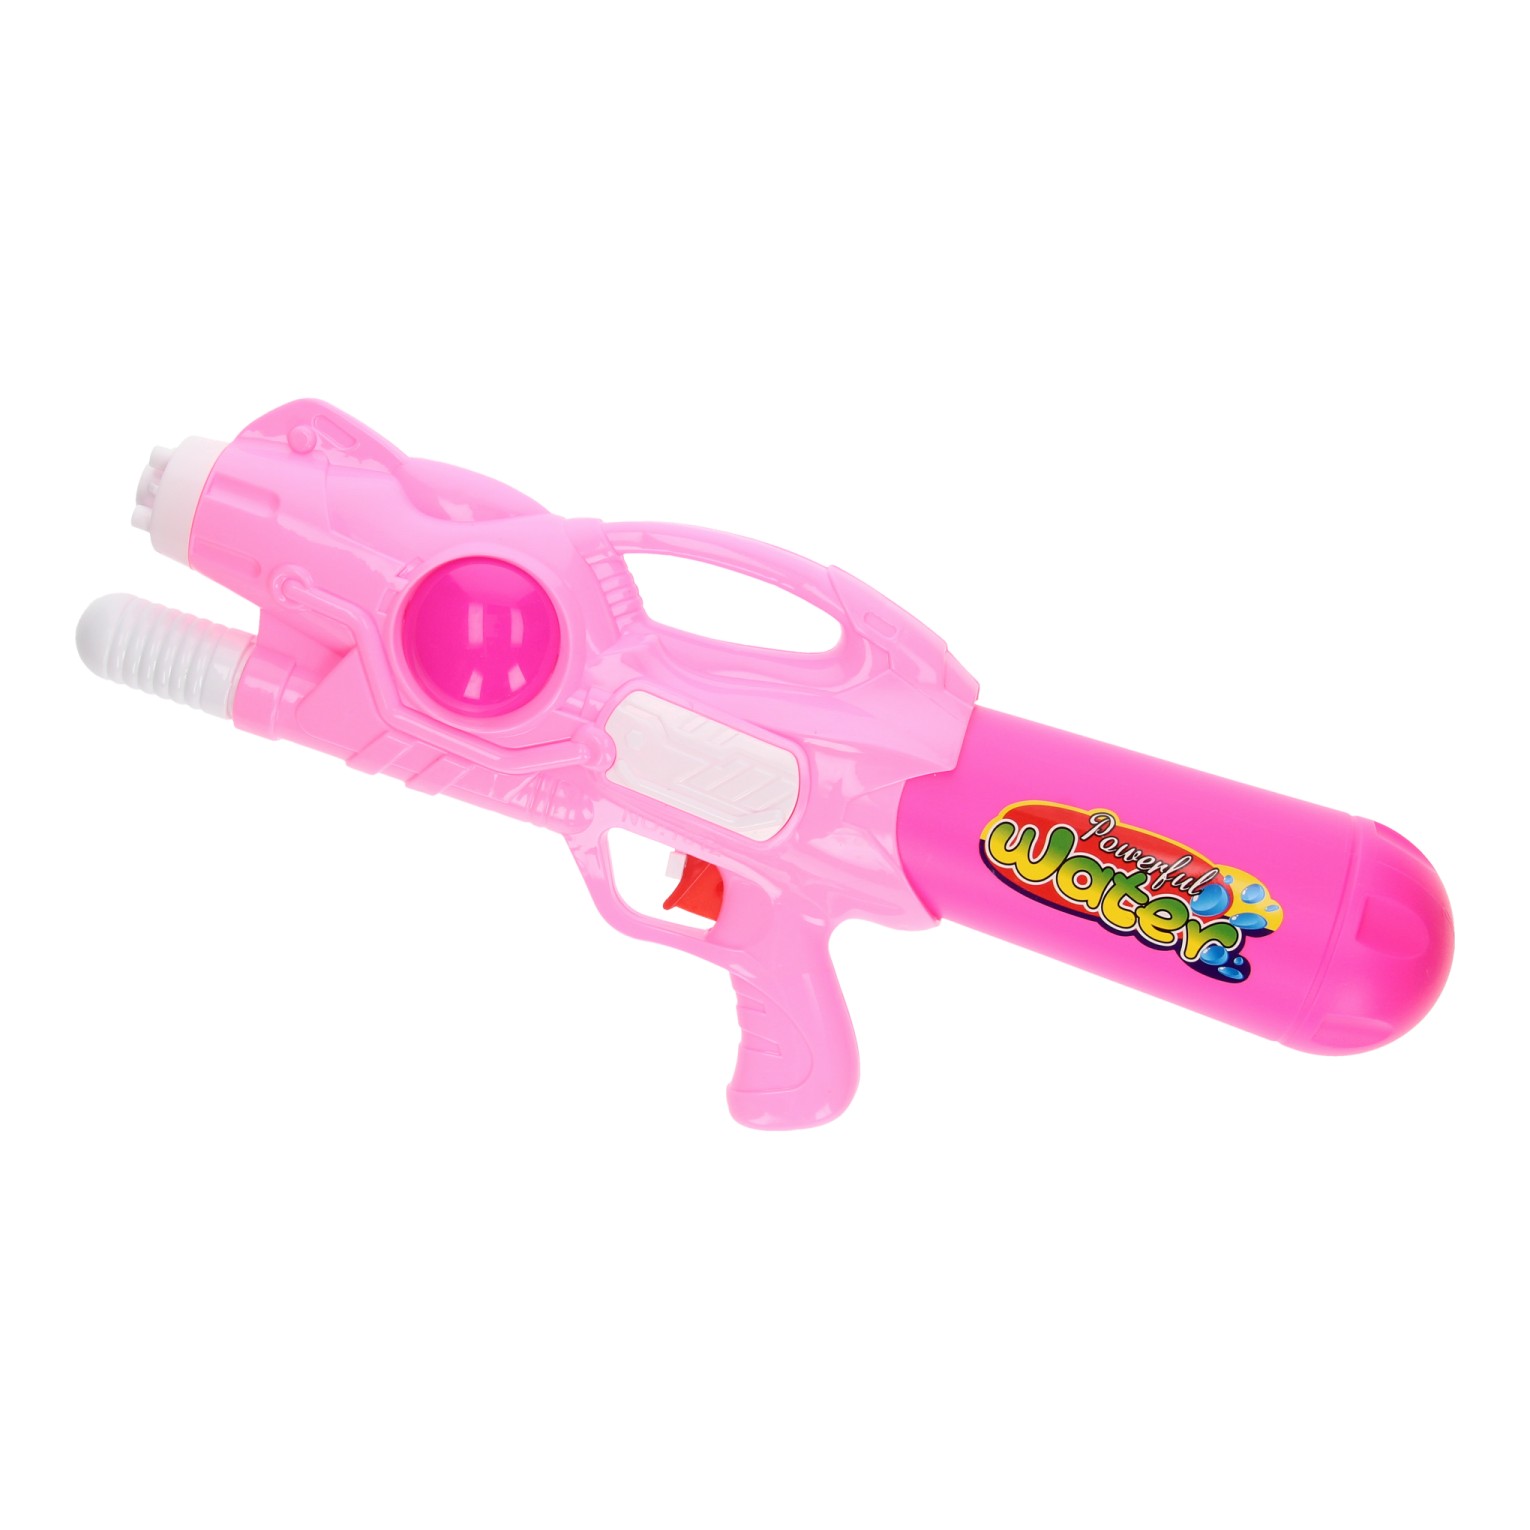 Kaufen Sie Wasserpistole Pink, 42cm online?